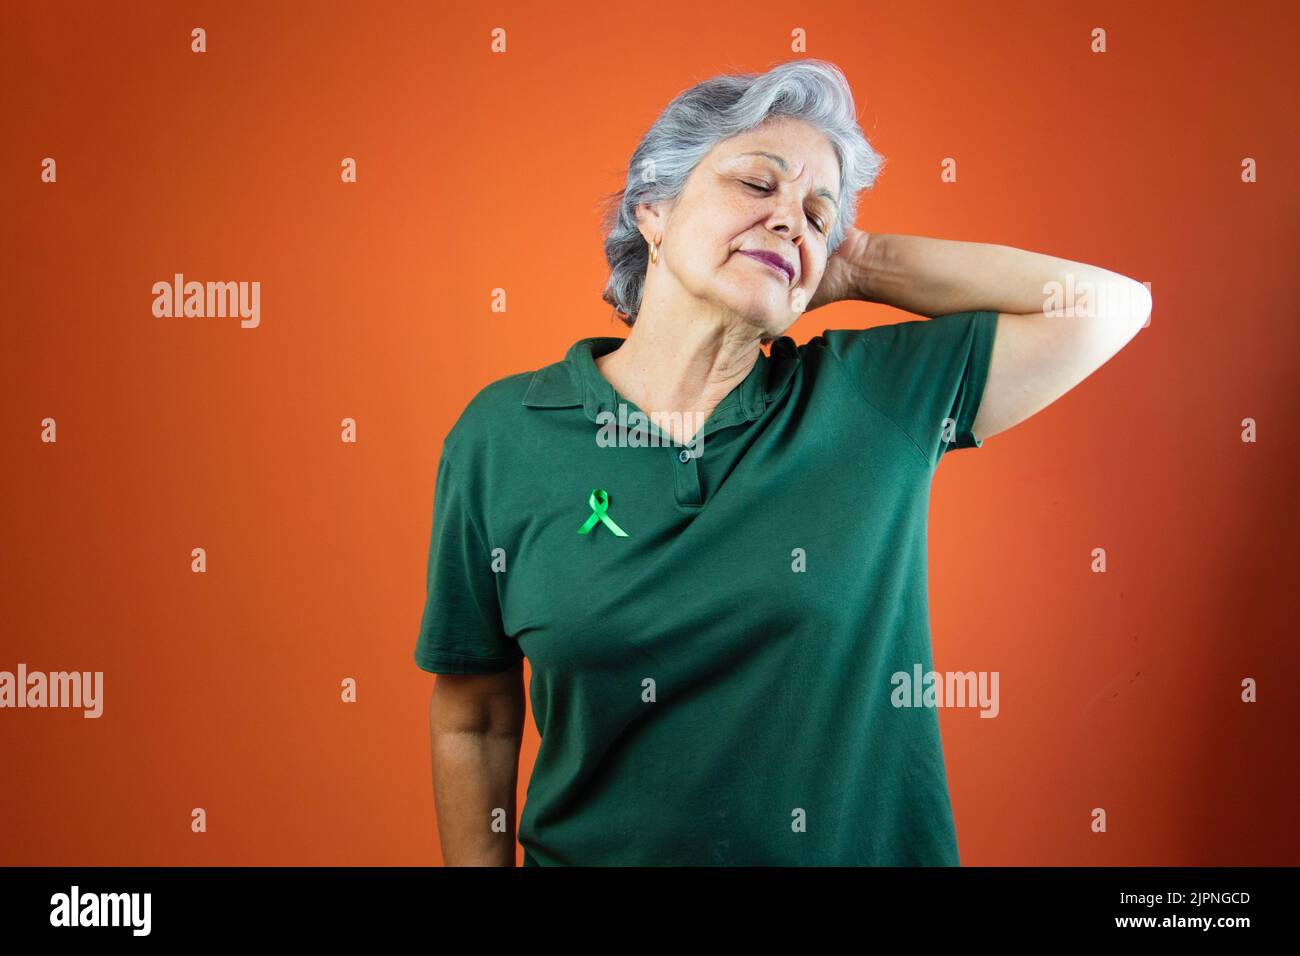 Giornata mondiale della salute mentale - Donna matura con capelli grigi, nastro verde e camicia isolato. Foto Stock